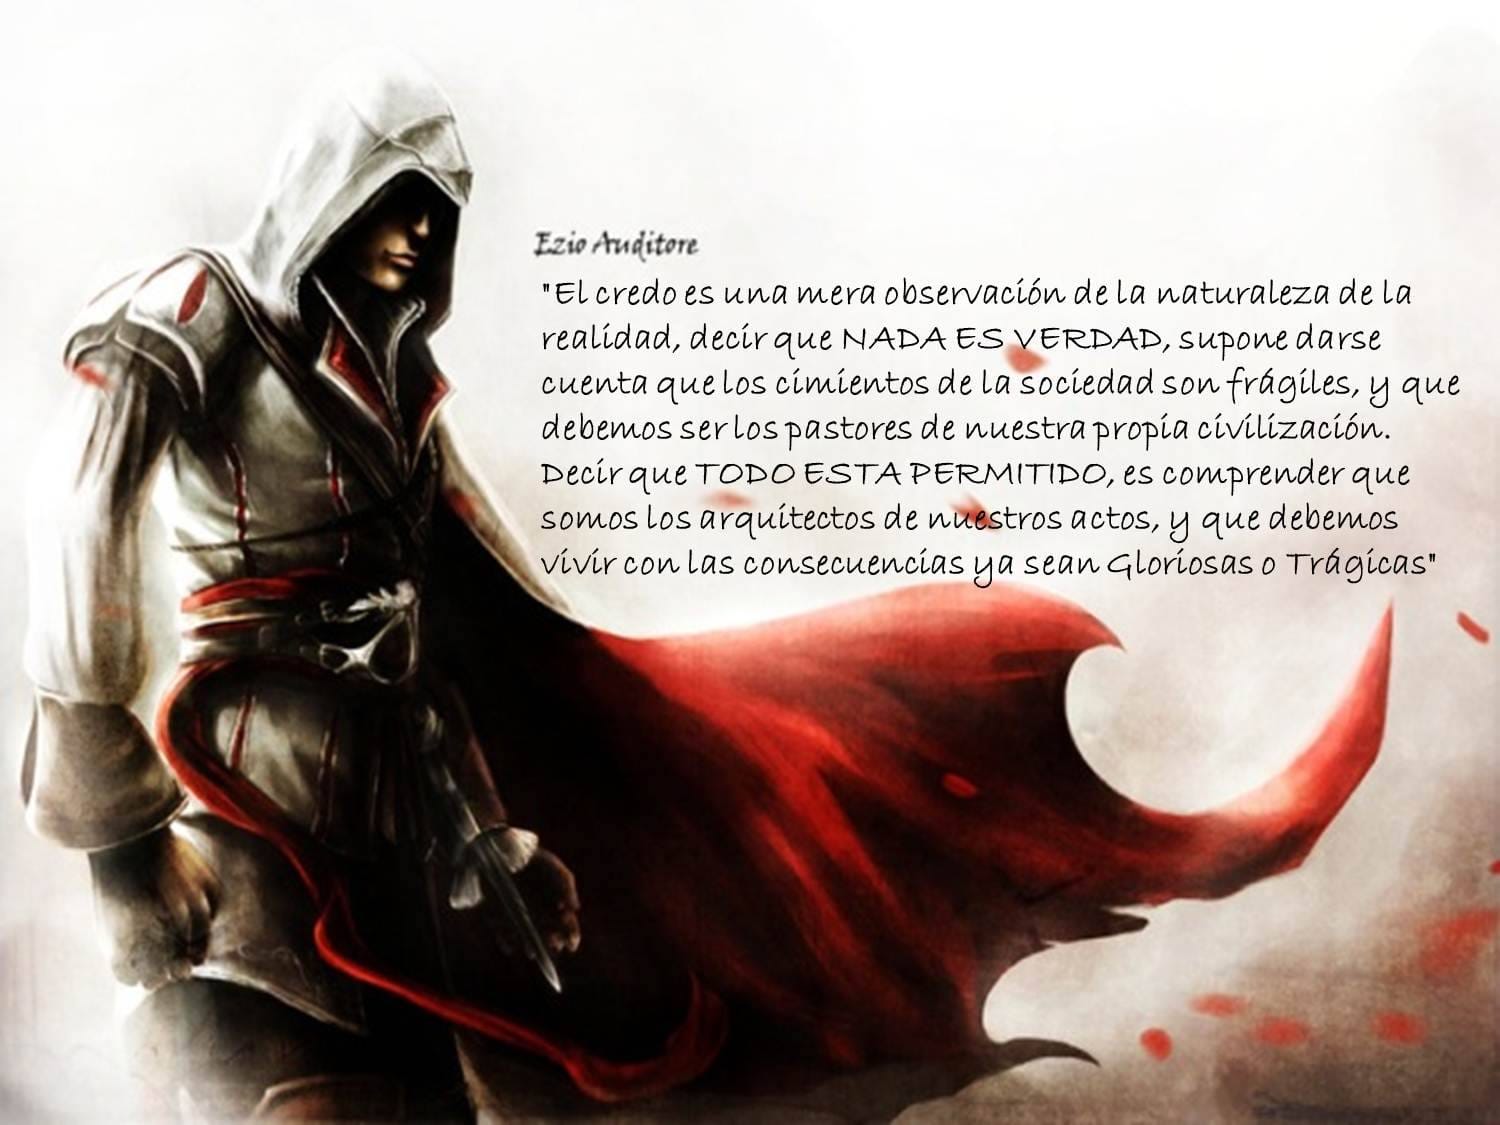 Ezio Auditore Quote: “Nada es verdad, todo esta permitido.”